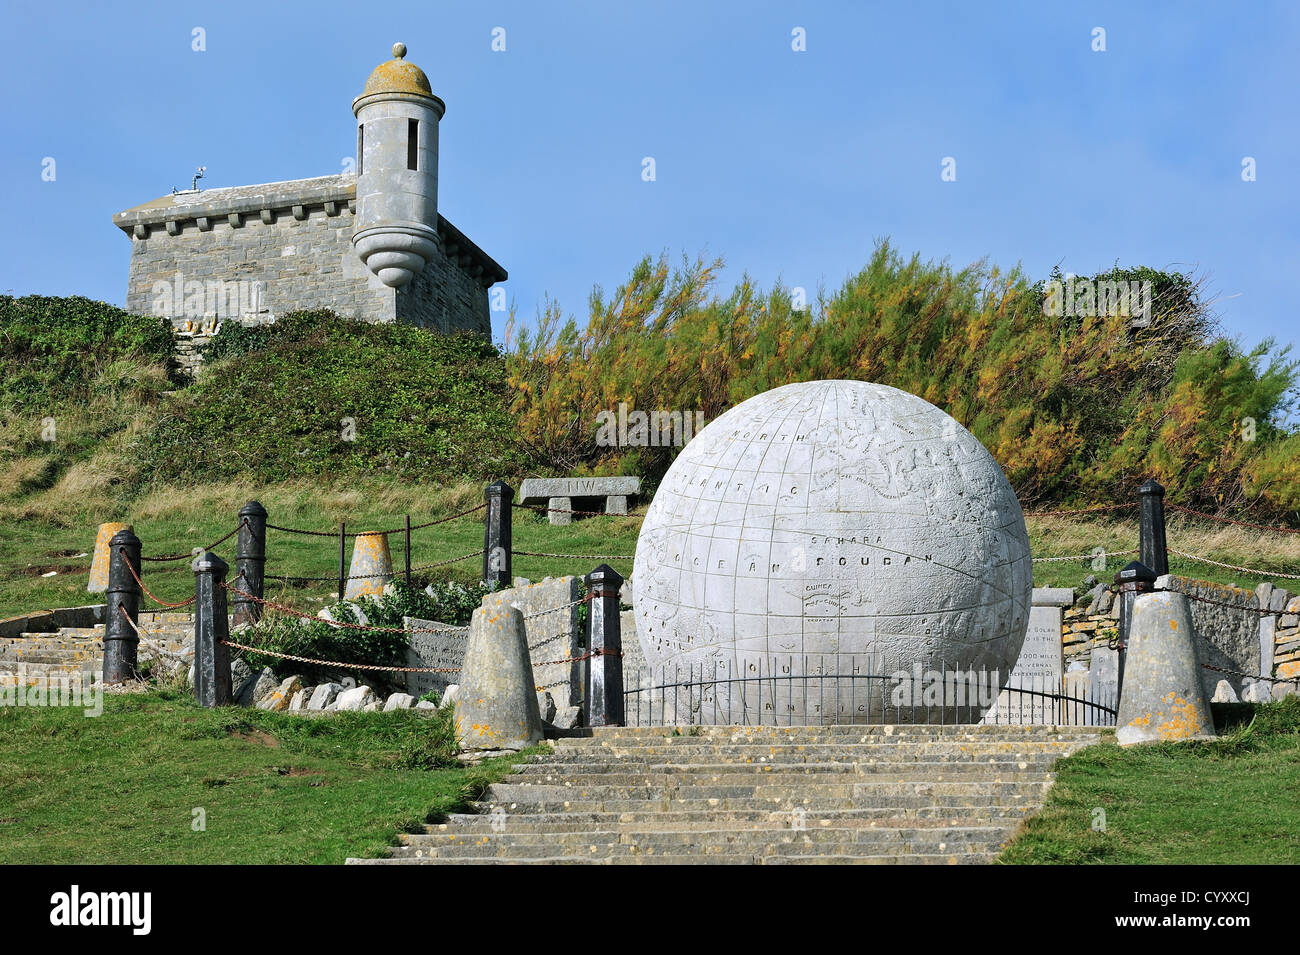 Le Grand Globe en pierre de Portland à Durston Château, à l'île de Purbeck le long de la Côte Jurassique, Dorset, dans le sud de l'Angleterre, Royaume-Uni Banque D'Images